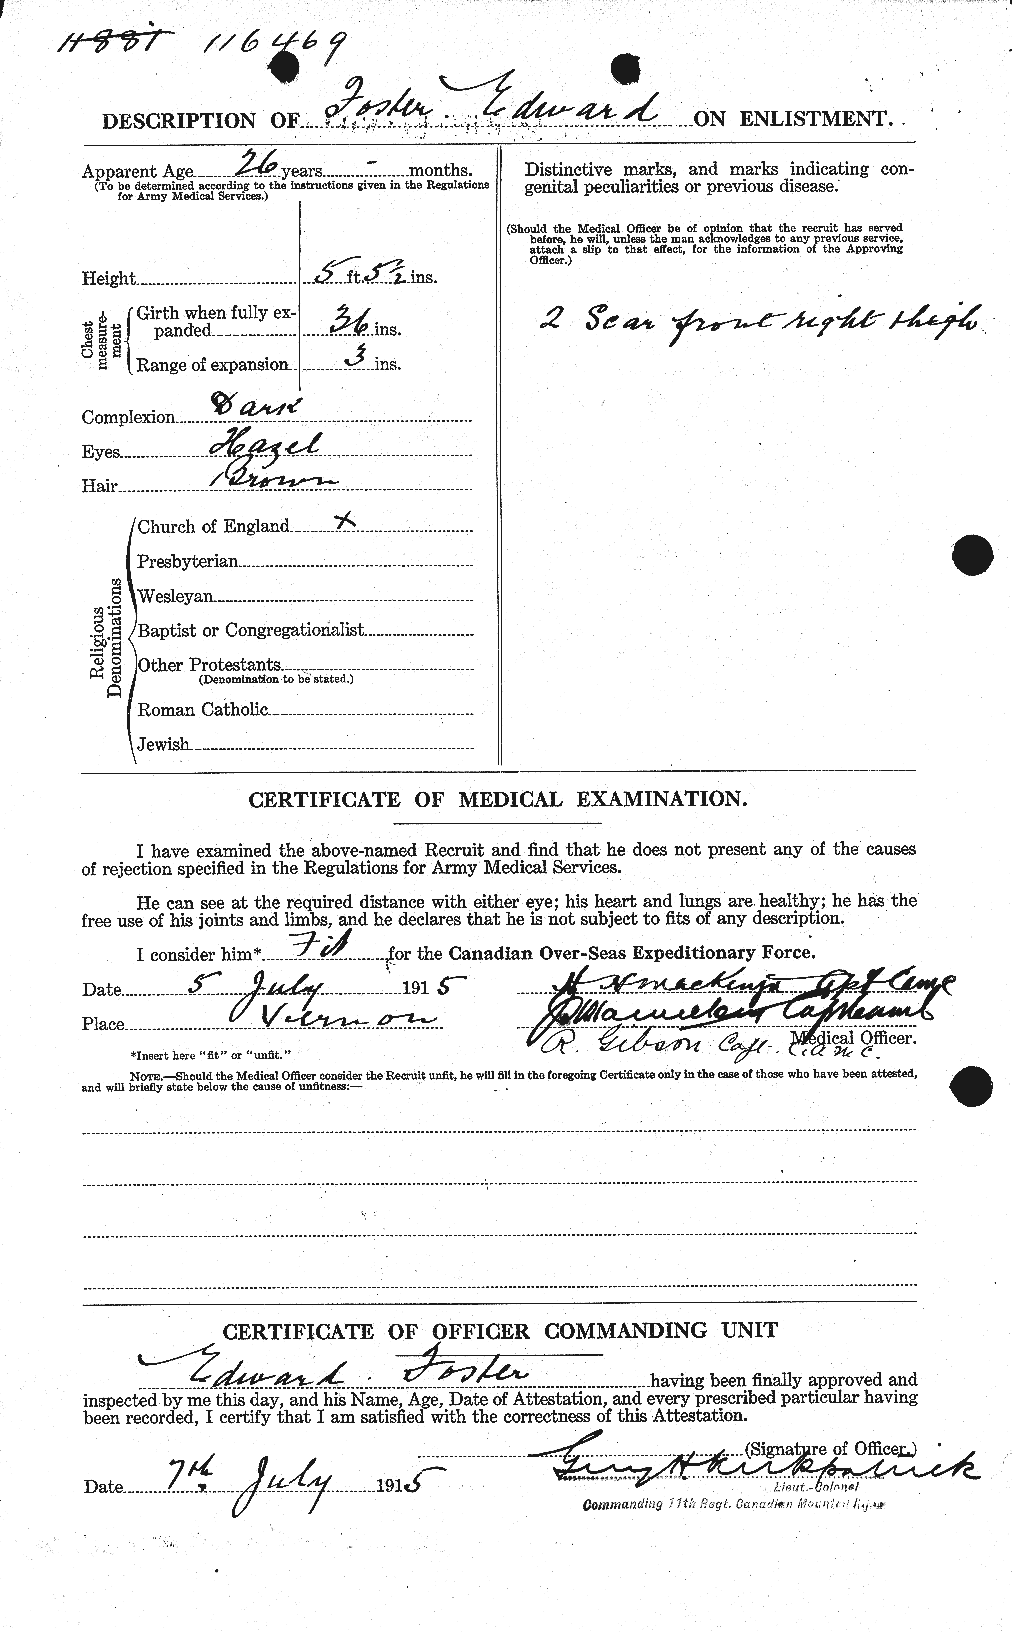 Dossiers du Personnel de la Première Guerre mondiale - CEC 330576b